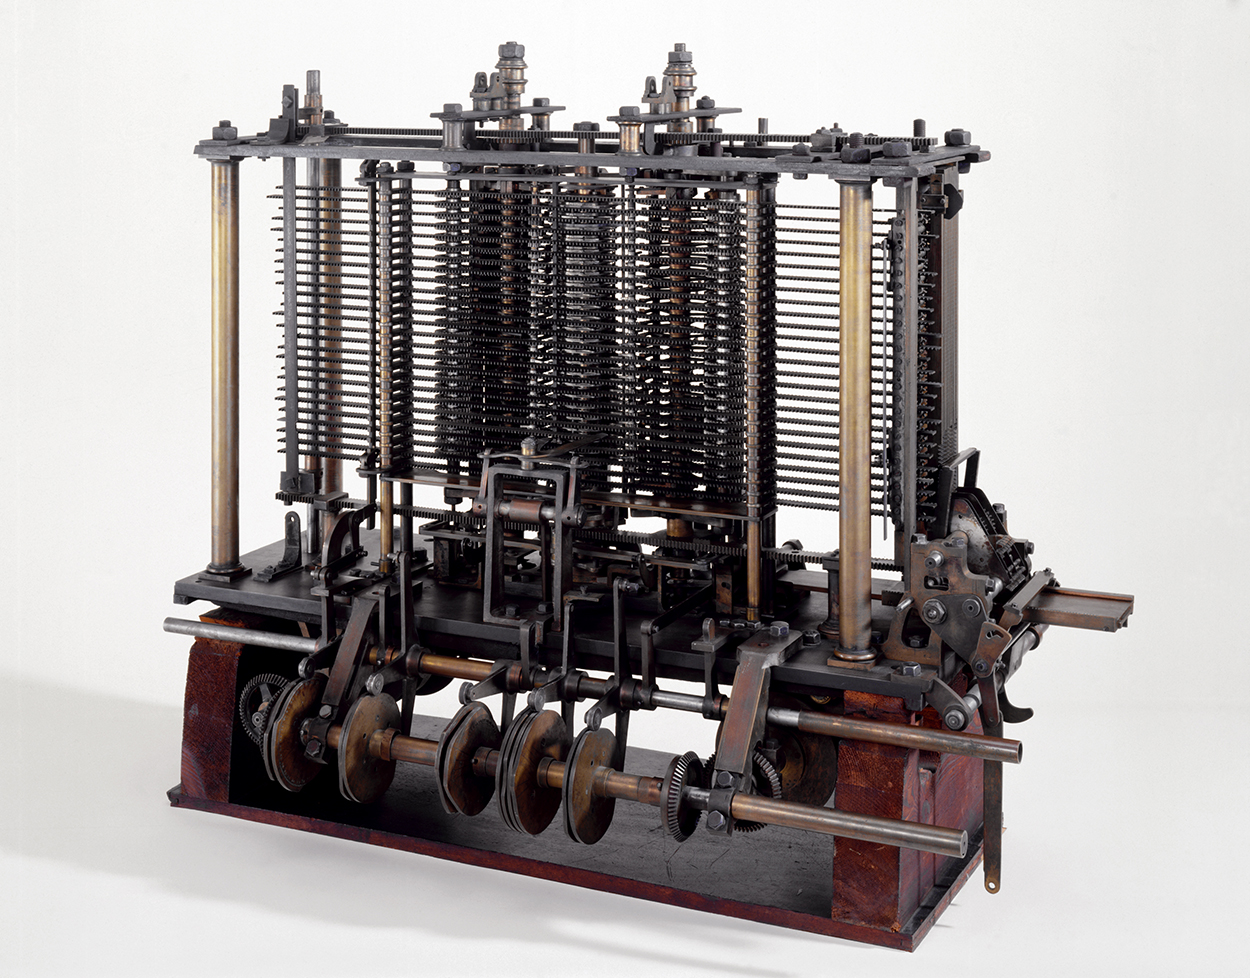 Аналитический двигатель (Analytical Engine) Чарльза Бэббиджа, находится в Музее  науки, в Лондоне с 1878г